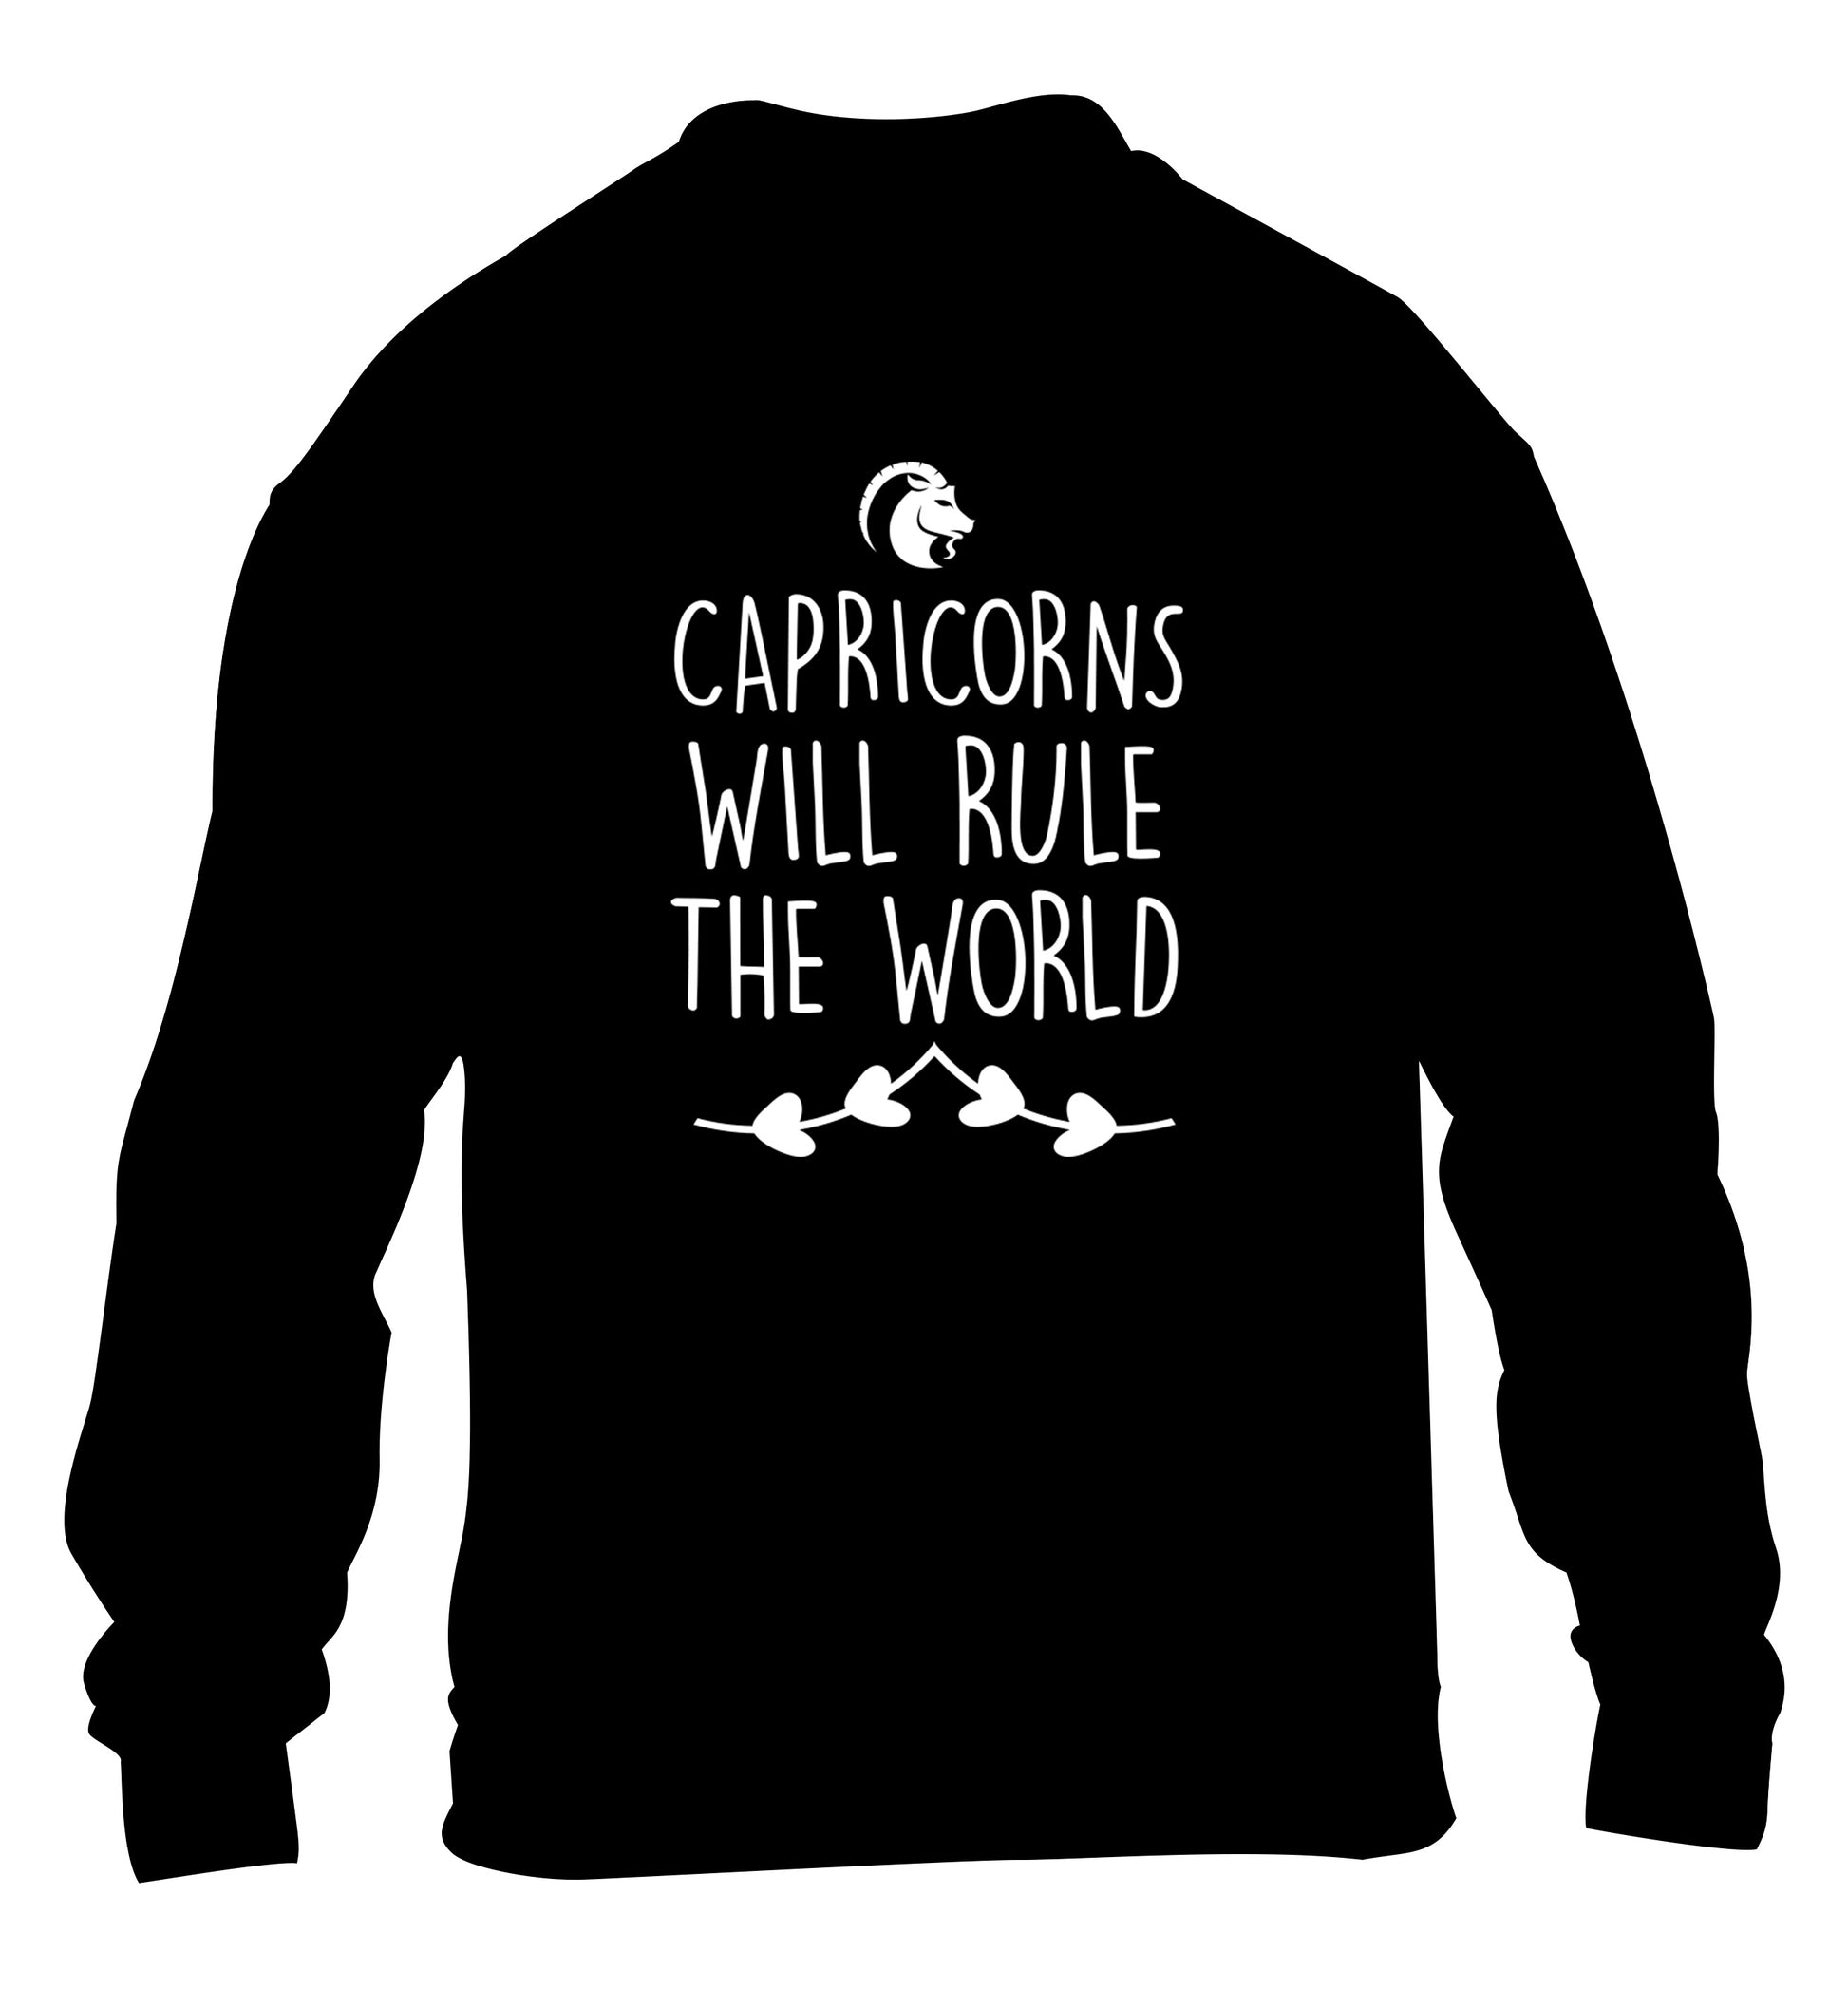 Capricorns will rule the world children's black sweater 12-13 Years